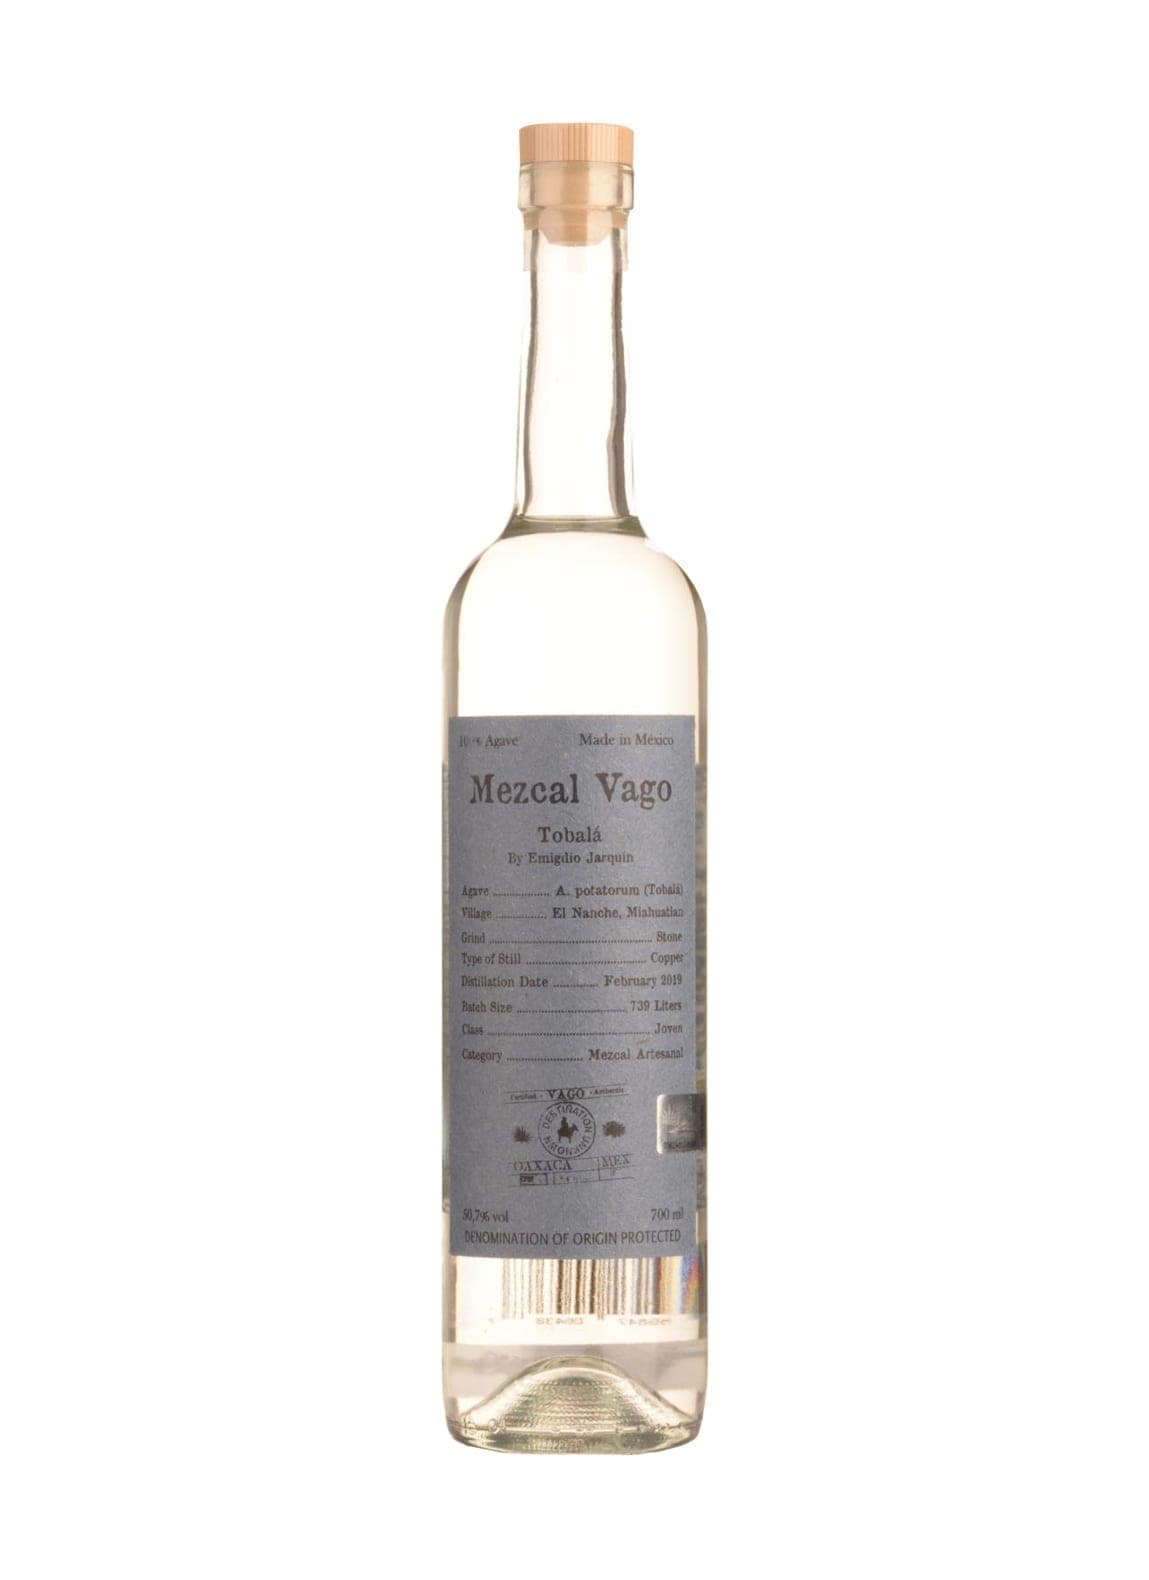 Mezcal Vago Tobala 50.86% 700ml | Tequila | Shop online at Spirits of France